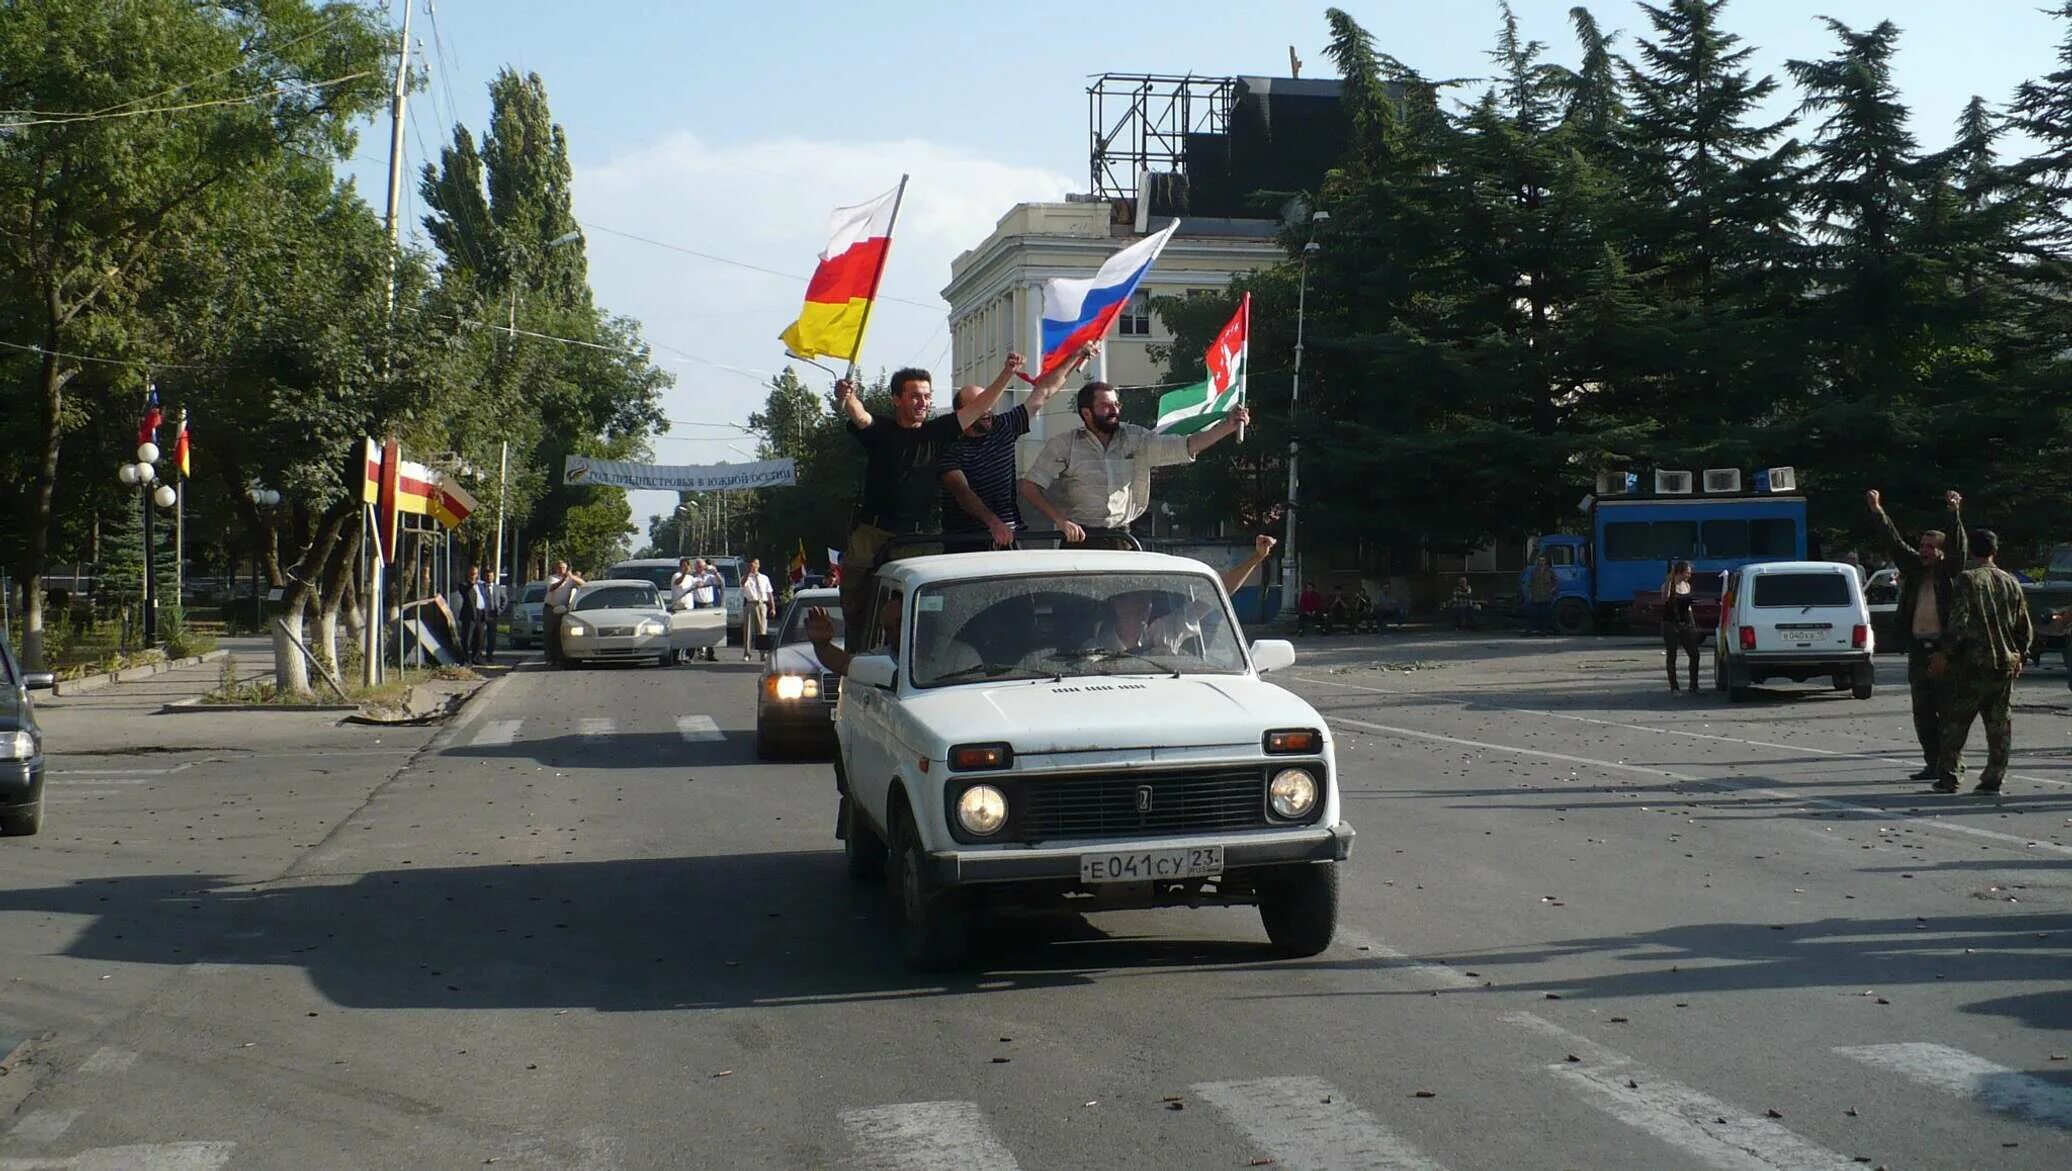 Южная осетия законы. Независимость Абхазии и Южной Осетии 2008. Цхинвал август 2008. 26 Августа 2008 признание Россией независимости Южной Осетии и Абхазии.